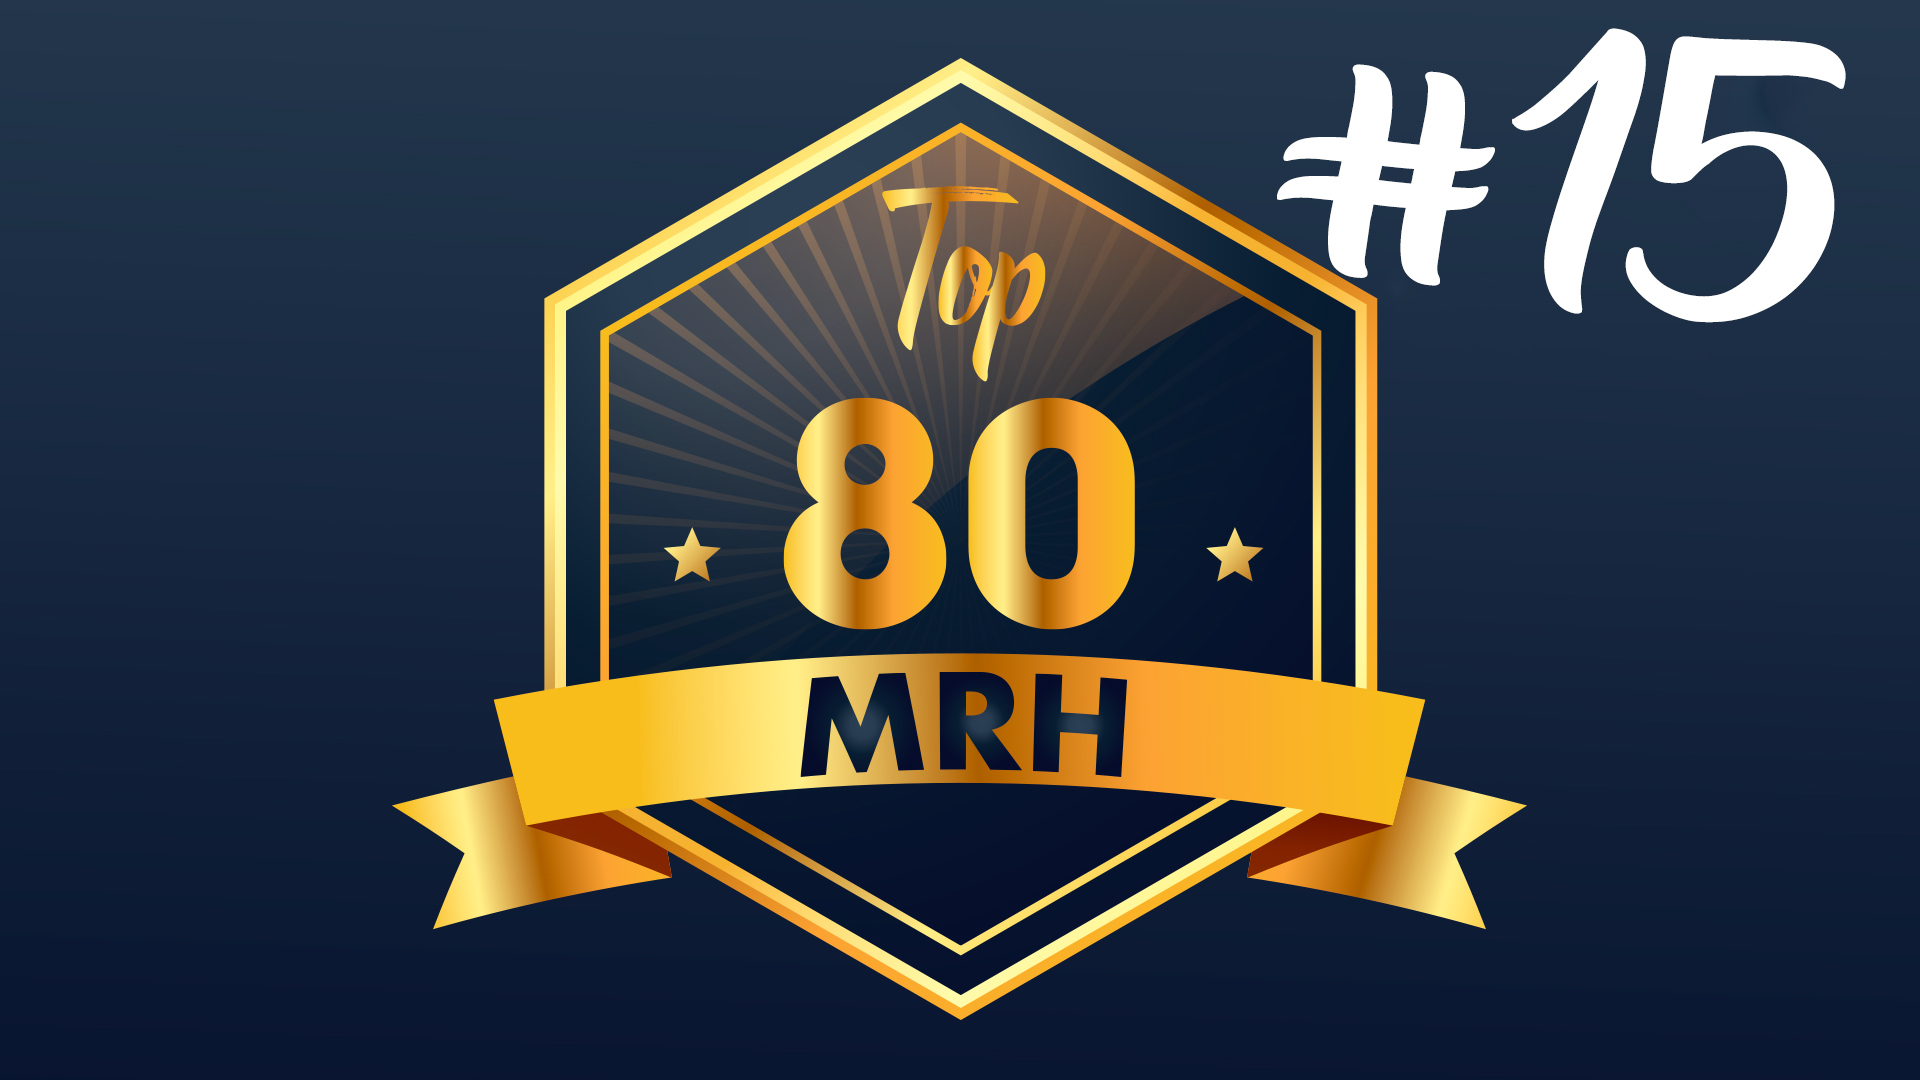 Top 80 MRH - Qui fera partie du 15e classement Top MRH